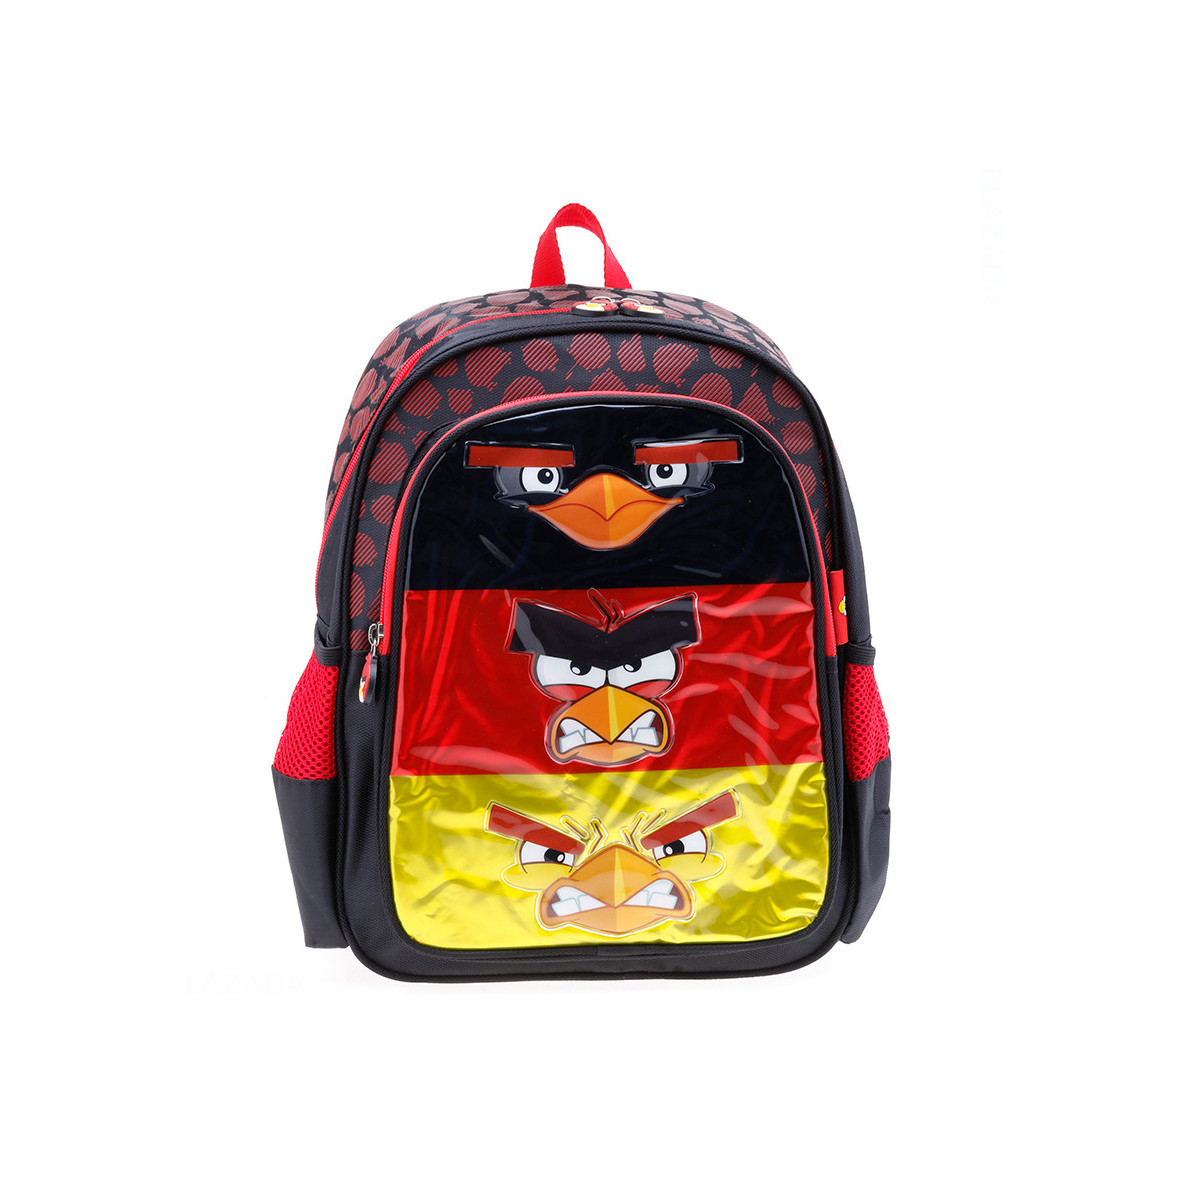 Balo trẻ em 15'' hình Angry Bird 3 sọc ngang màu đỏ vàng phối đen dành cho học sinh ,bé trai - BLAB15 (32x16x38cm)